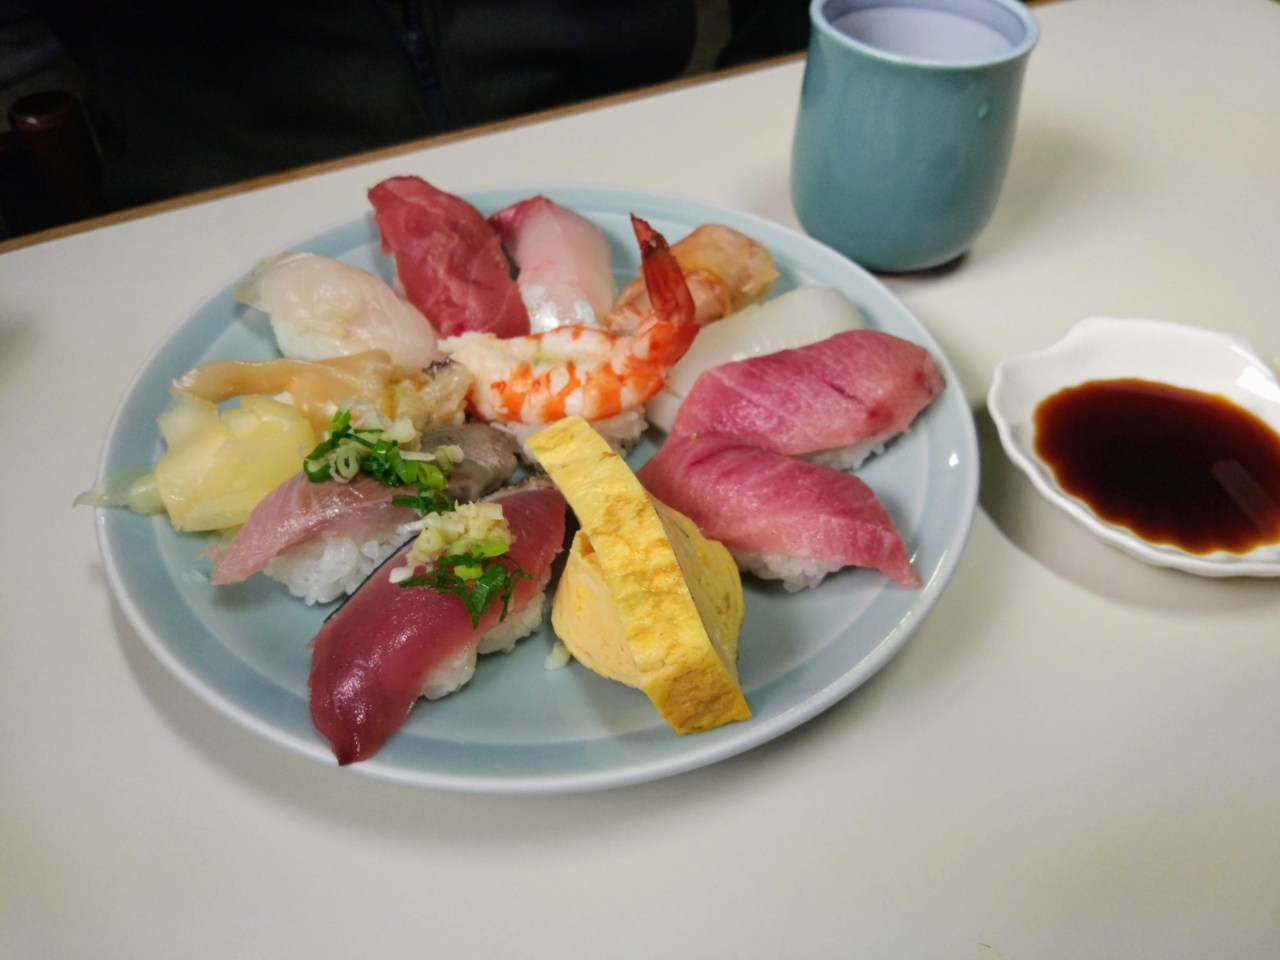 Токио, день 2: Рынок, рыба, остров, шмотки